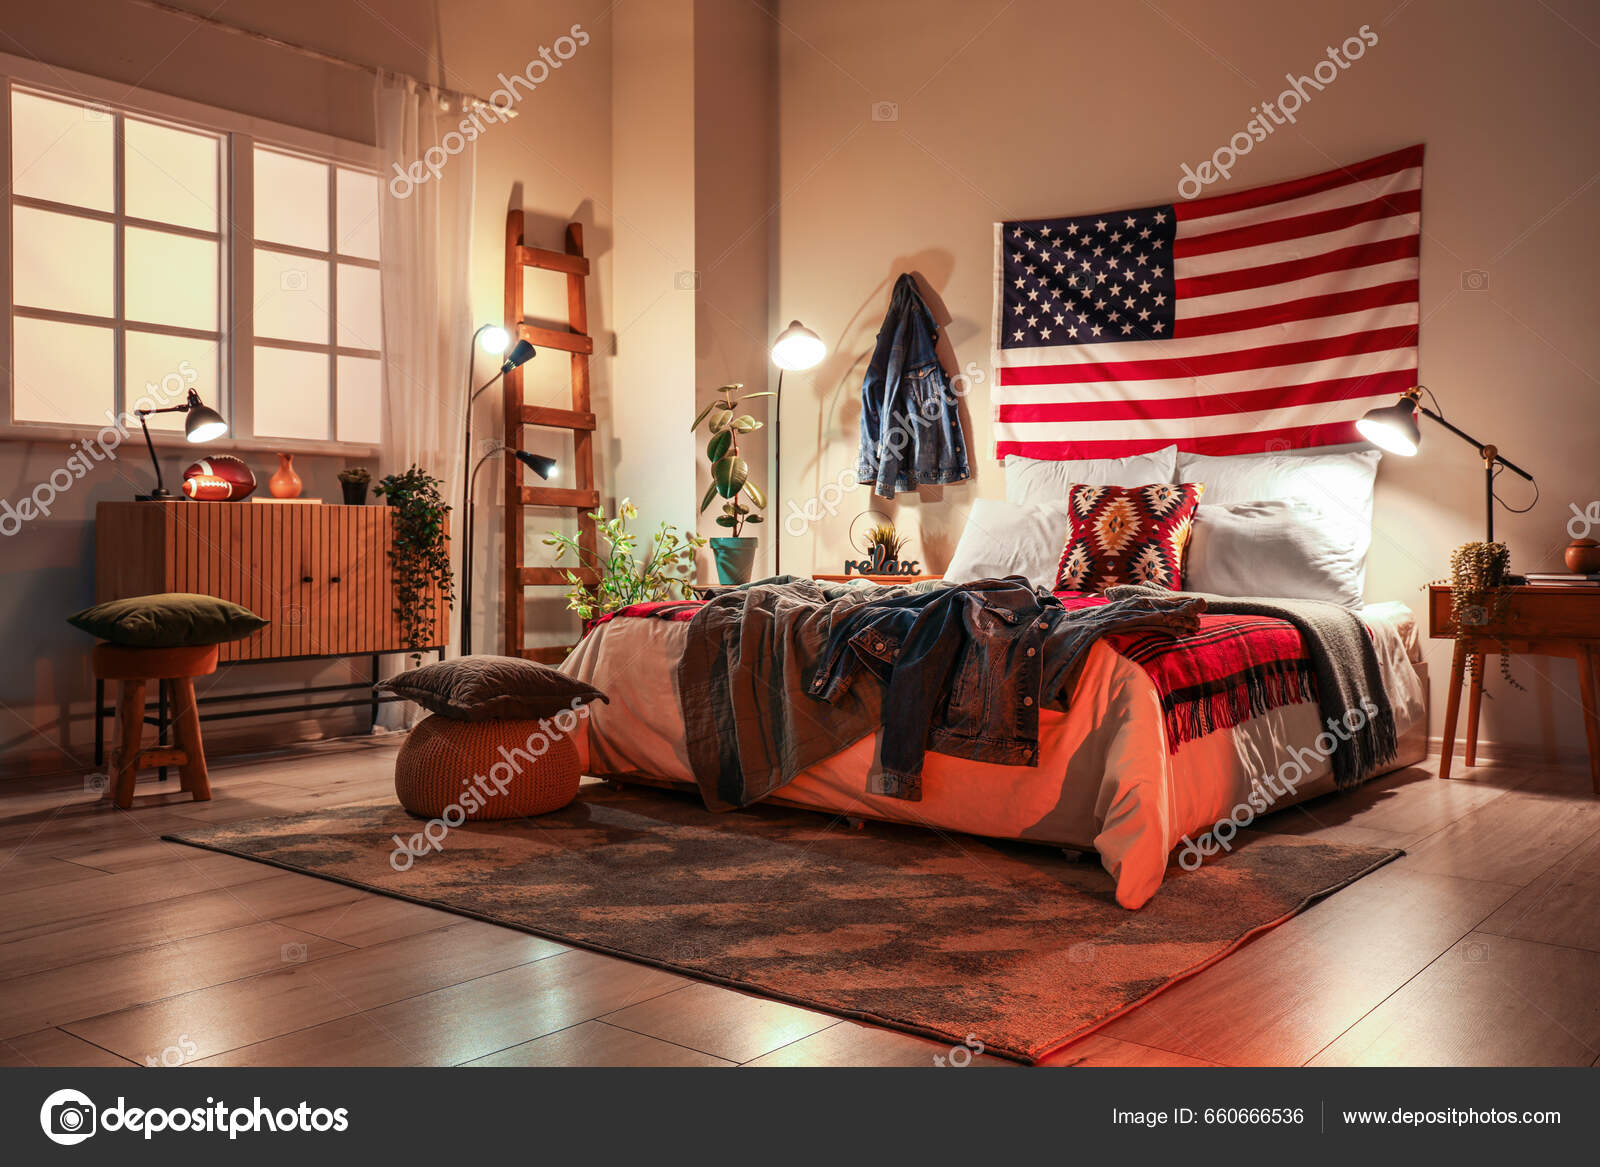 Innenraum Des Schlafzimmers Mit Usa Flagge Und Leuchtenden Lampen Abend -  Stockfotografie: lizenzfreie Fotos © serezniy 660666536